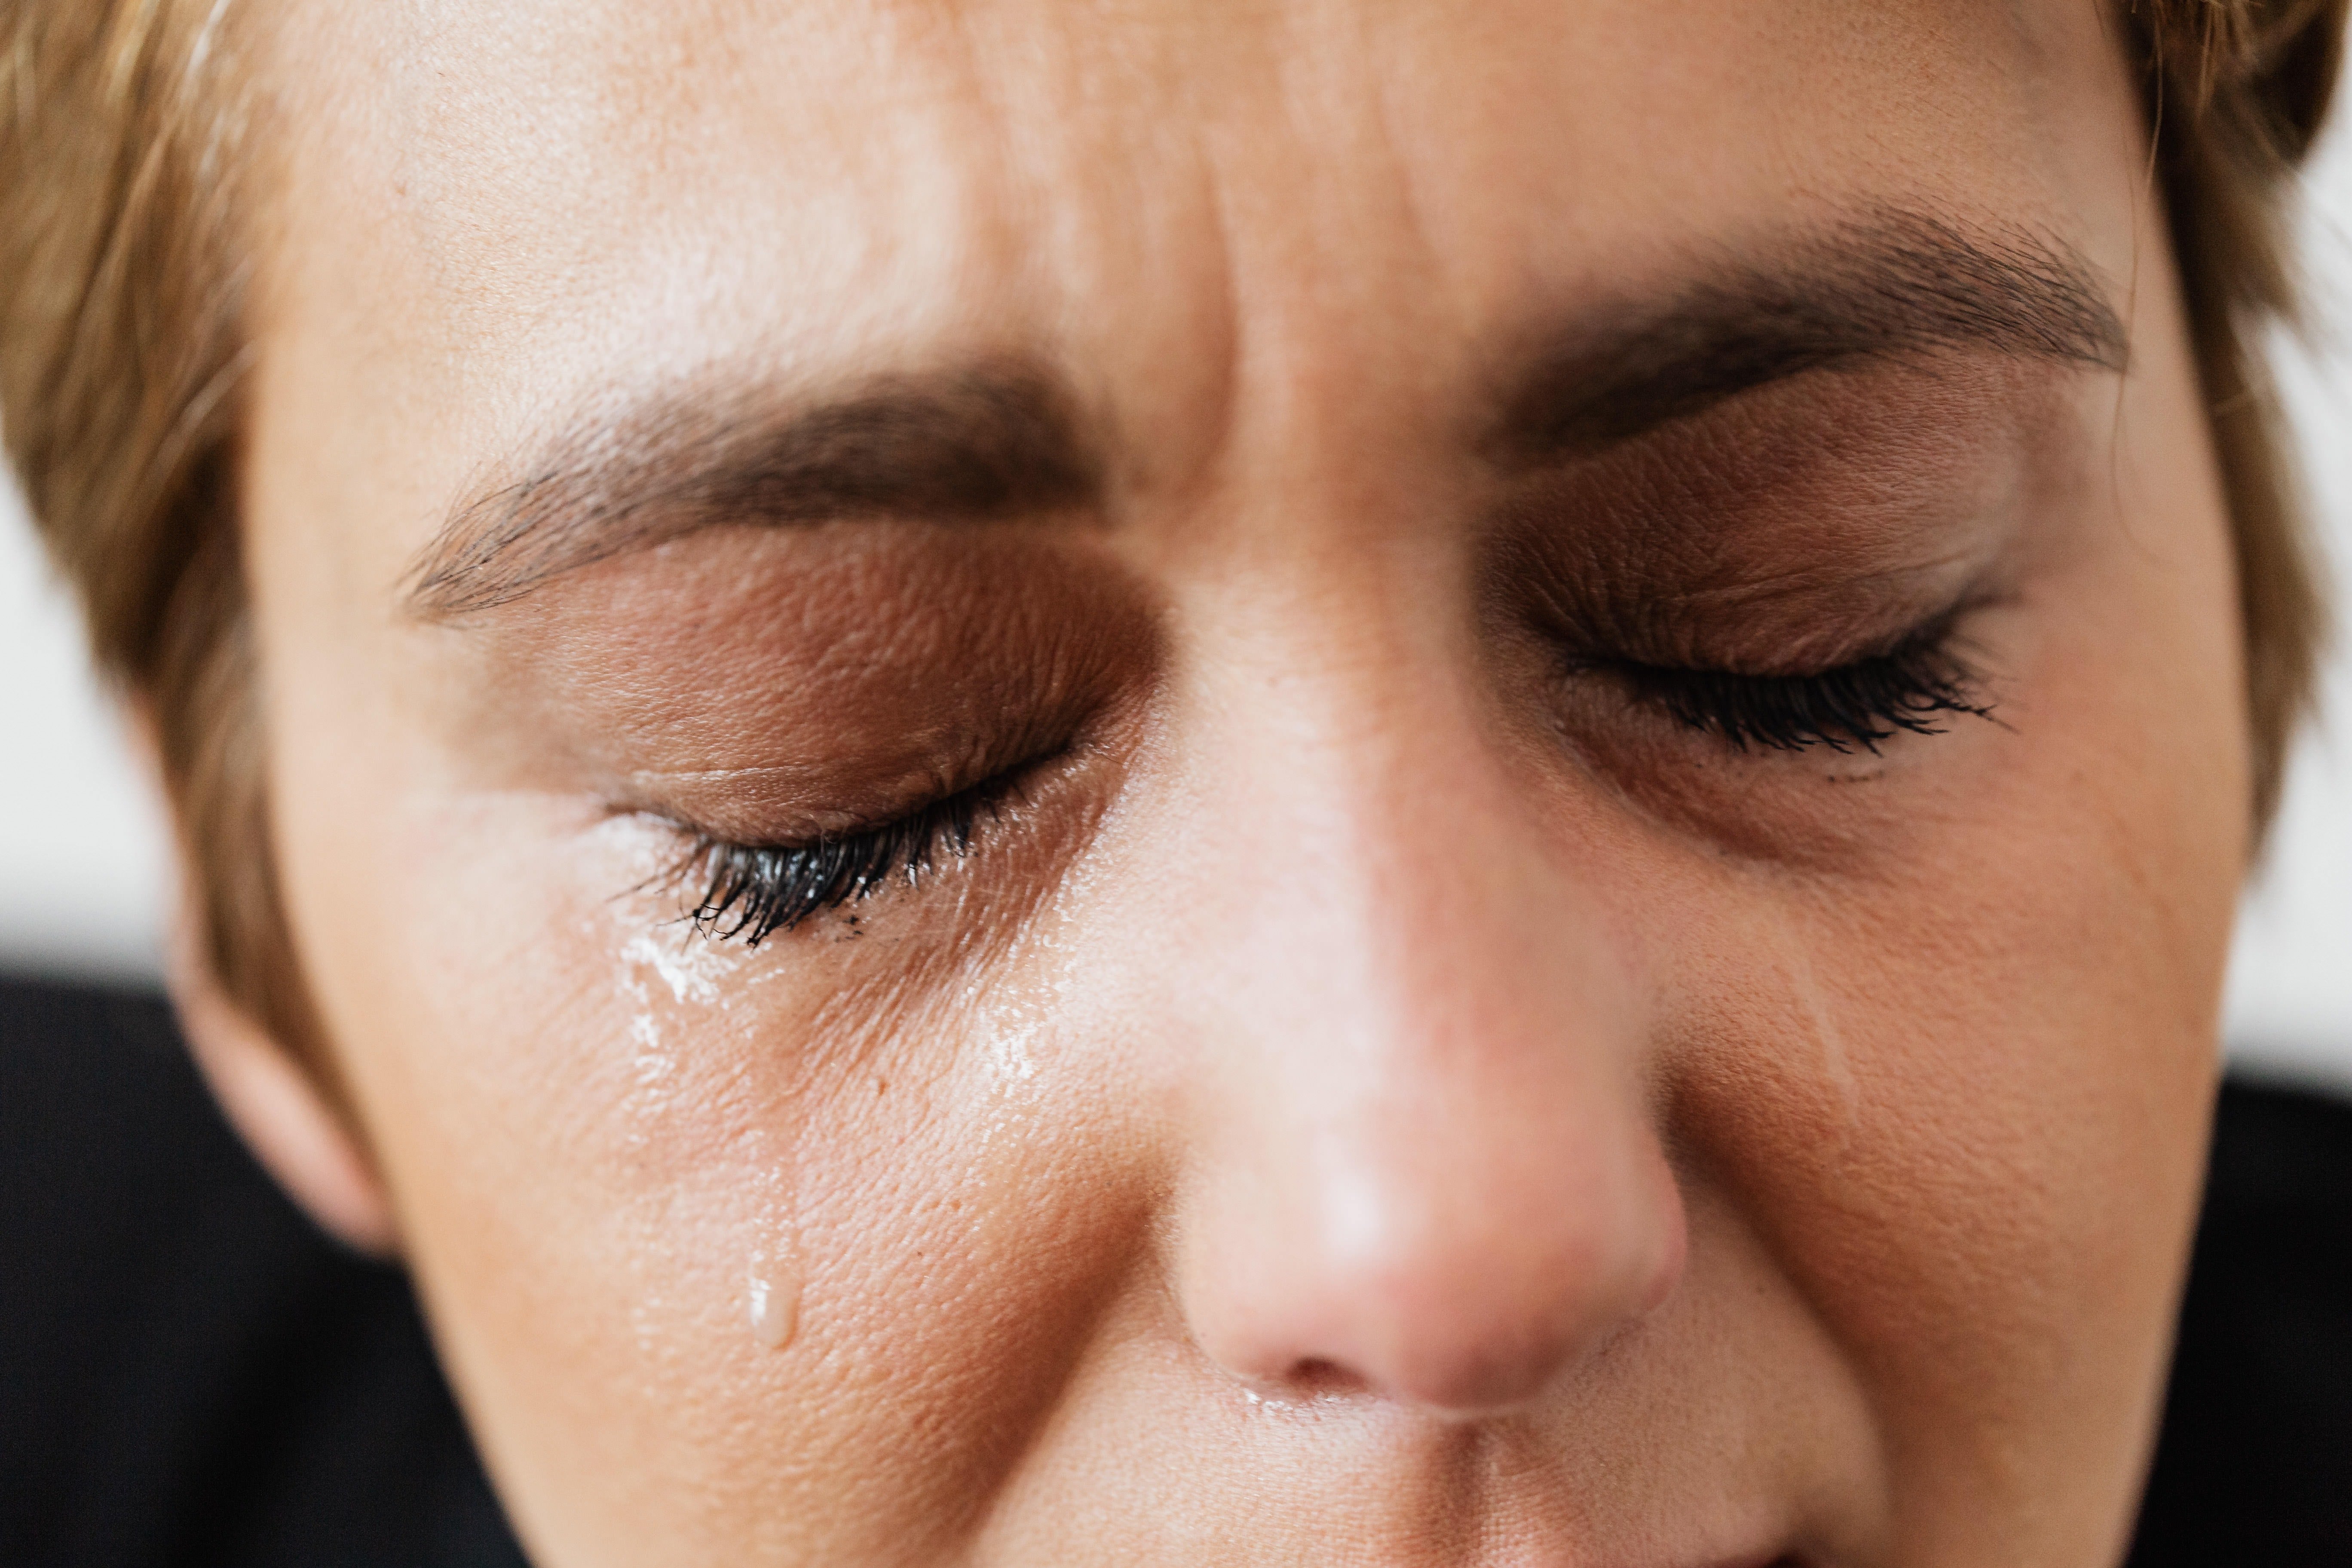 Emotional woman in tears. | Source: Pexels